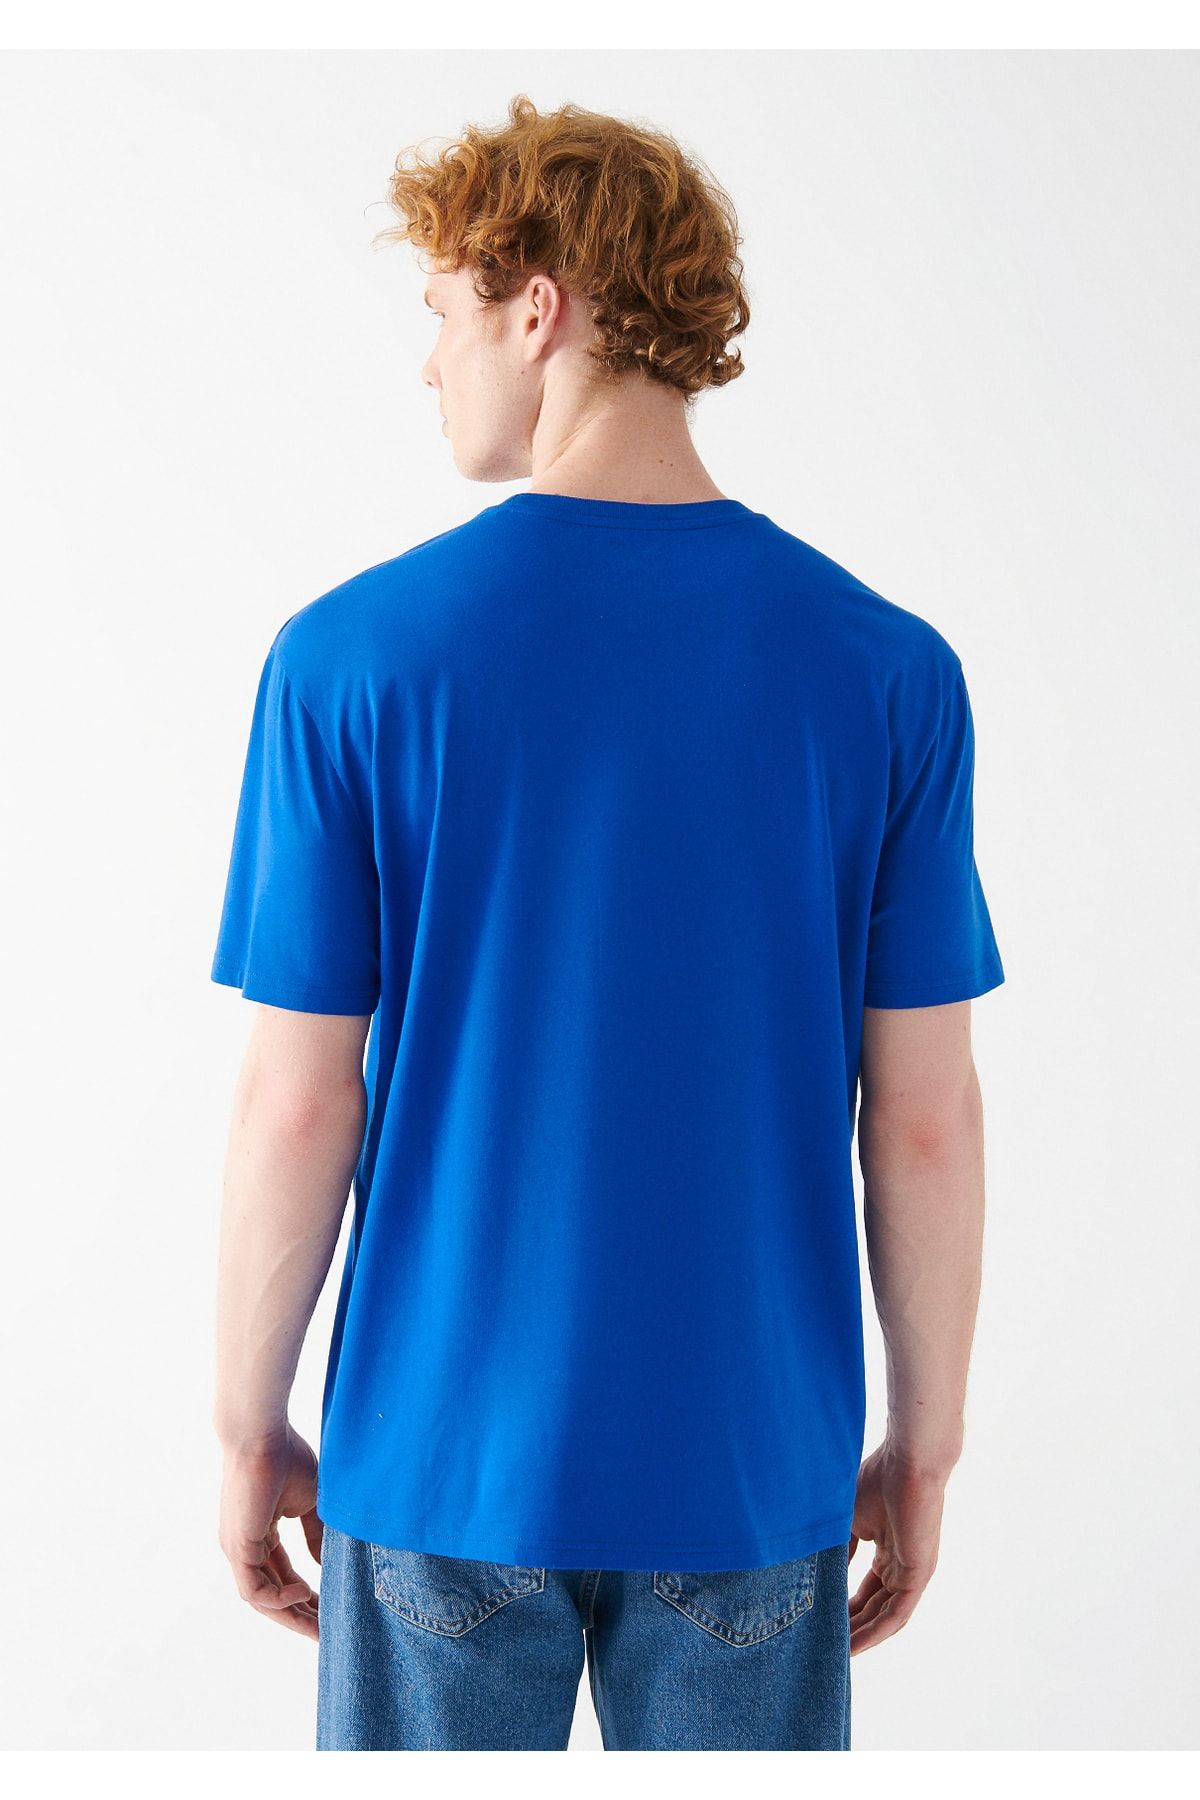 Mavi تی شرت چاپ شده آرم تناسب / برش راحت 067140-70896